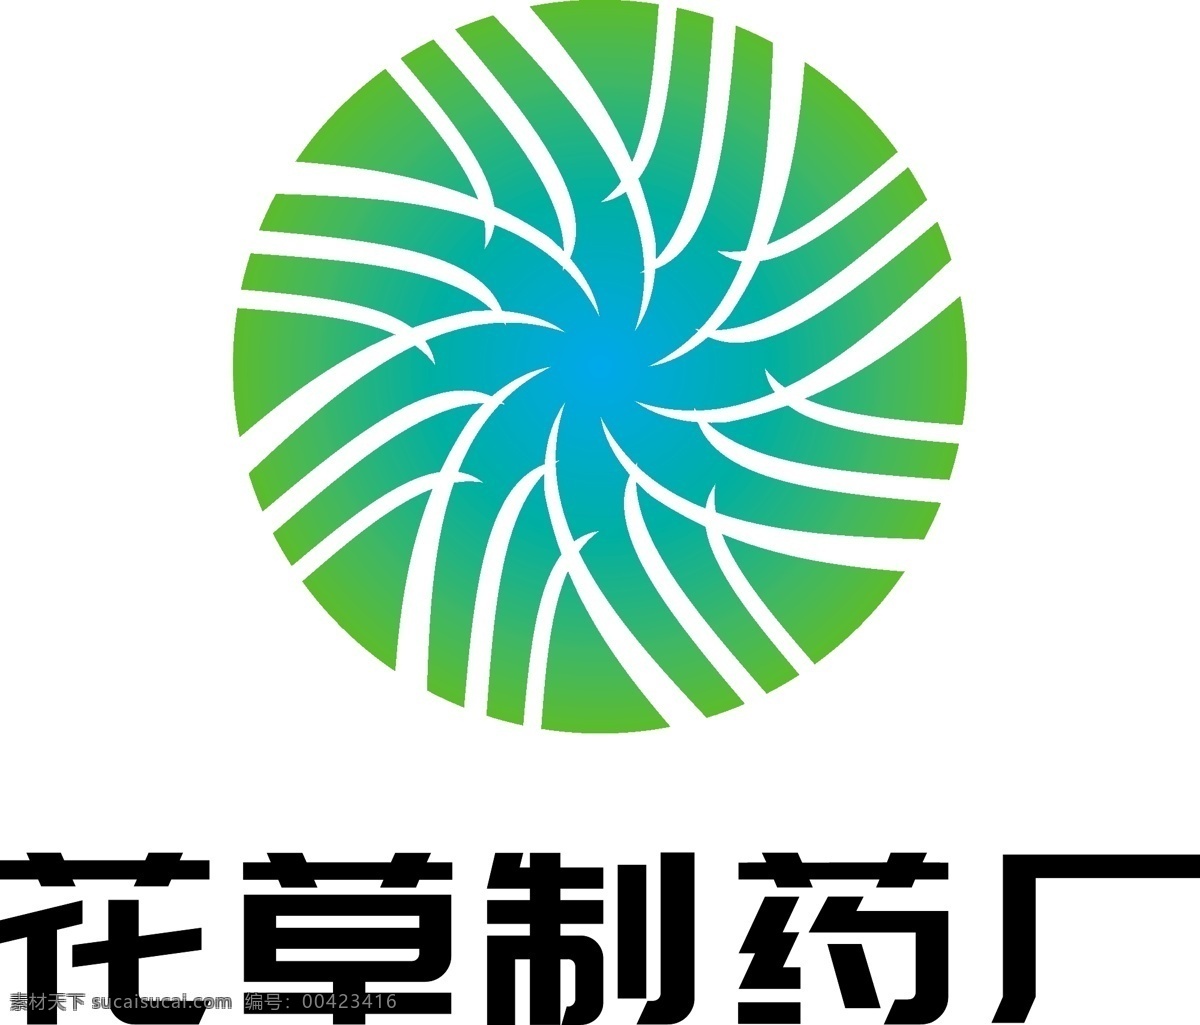 中医中药 医药 logo 中药 医药logo 药品logo 医疗行业 logo设计 标志设计